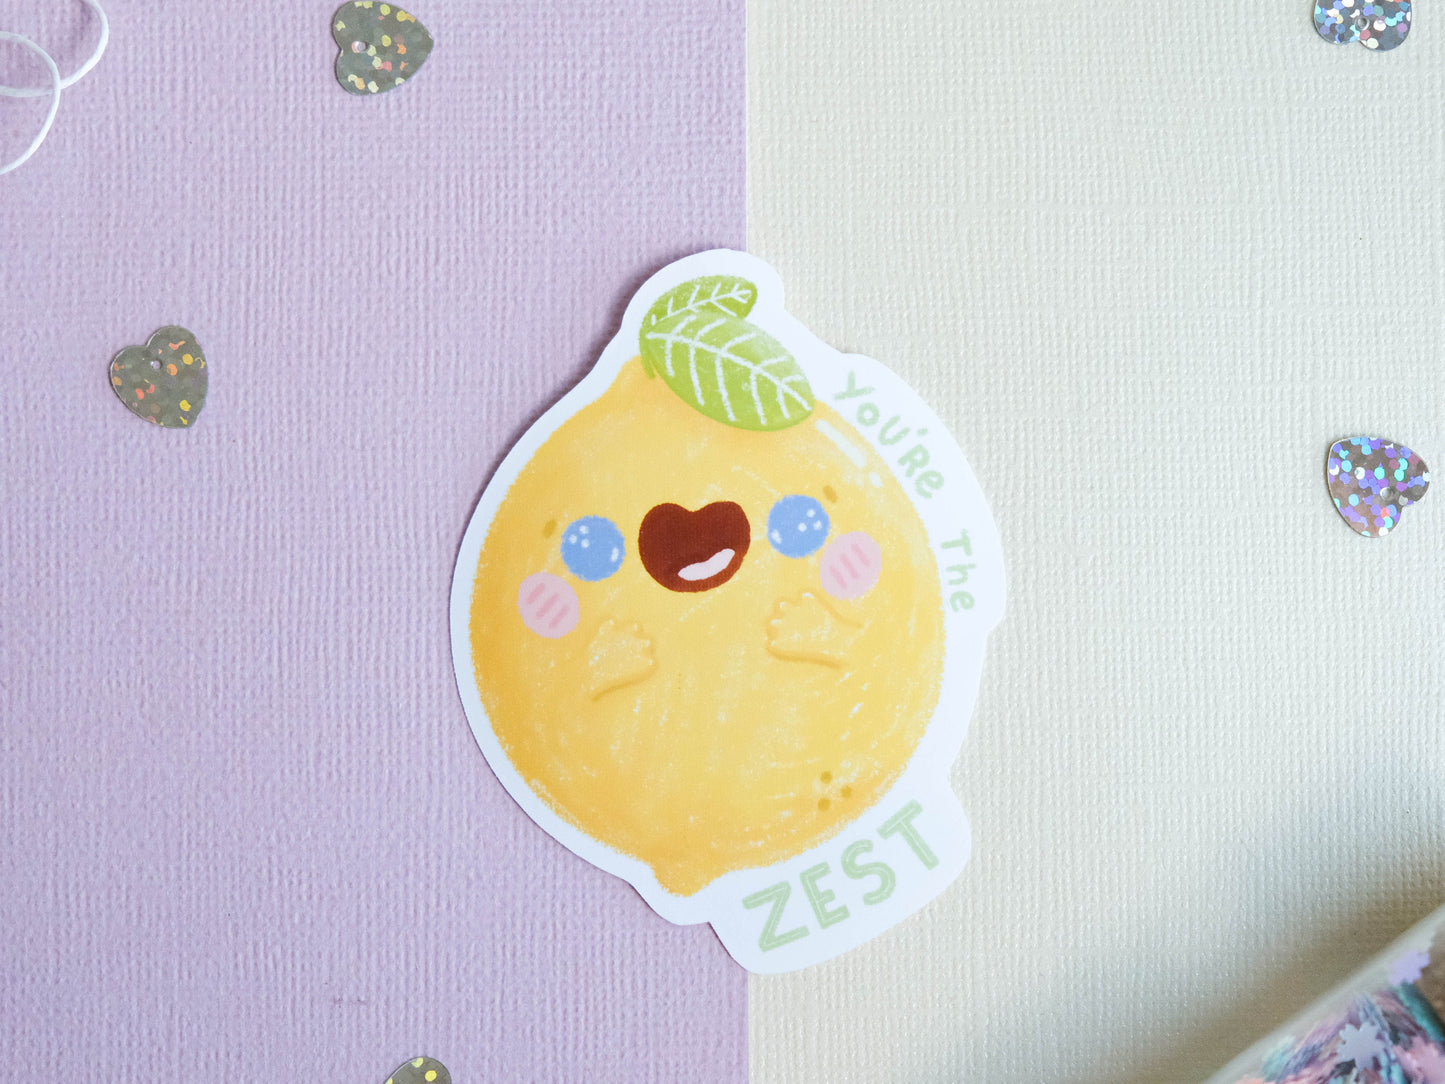 Sticker Cute Little Lemon - Lemonade Sticker - Water Resistant Sticker - Cute Lemon Sticker for Laptop - You're the Zest